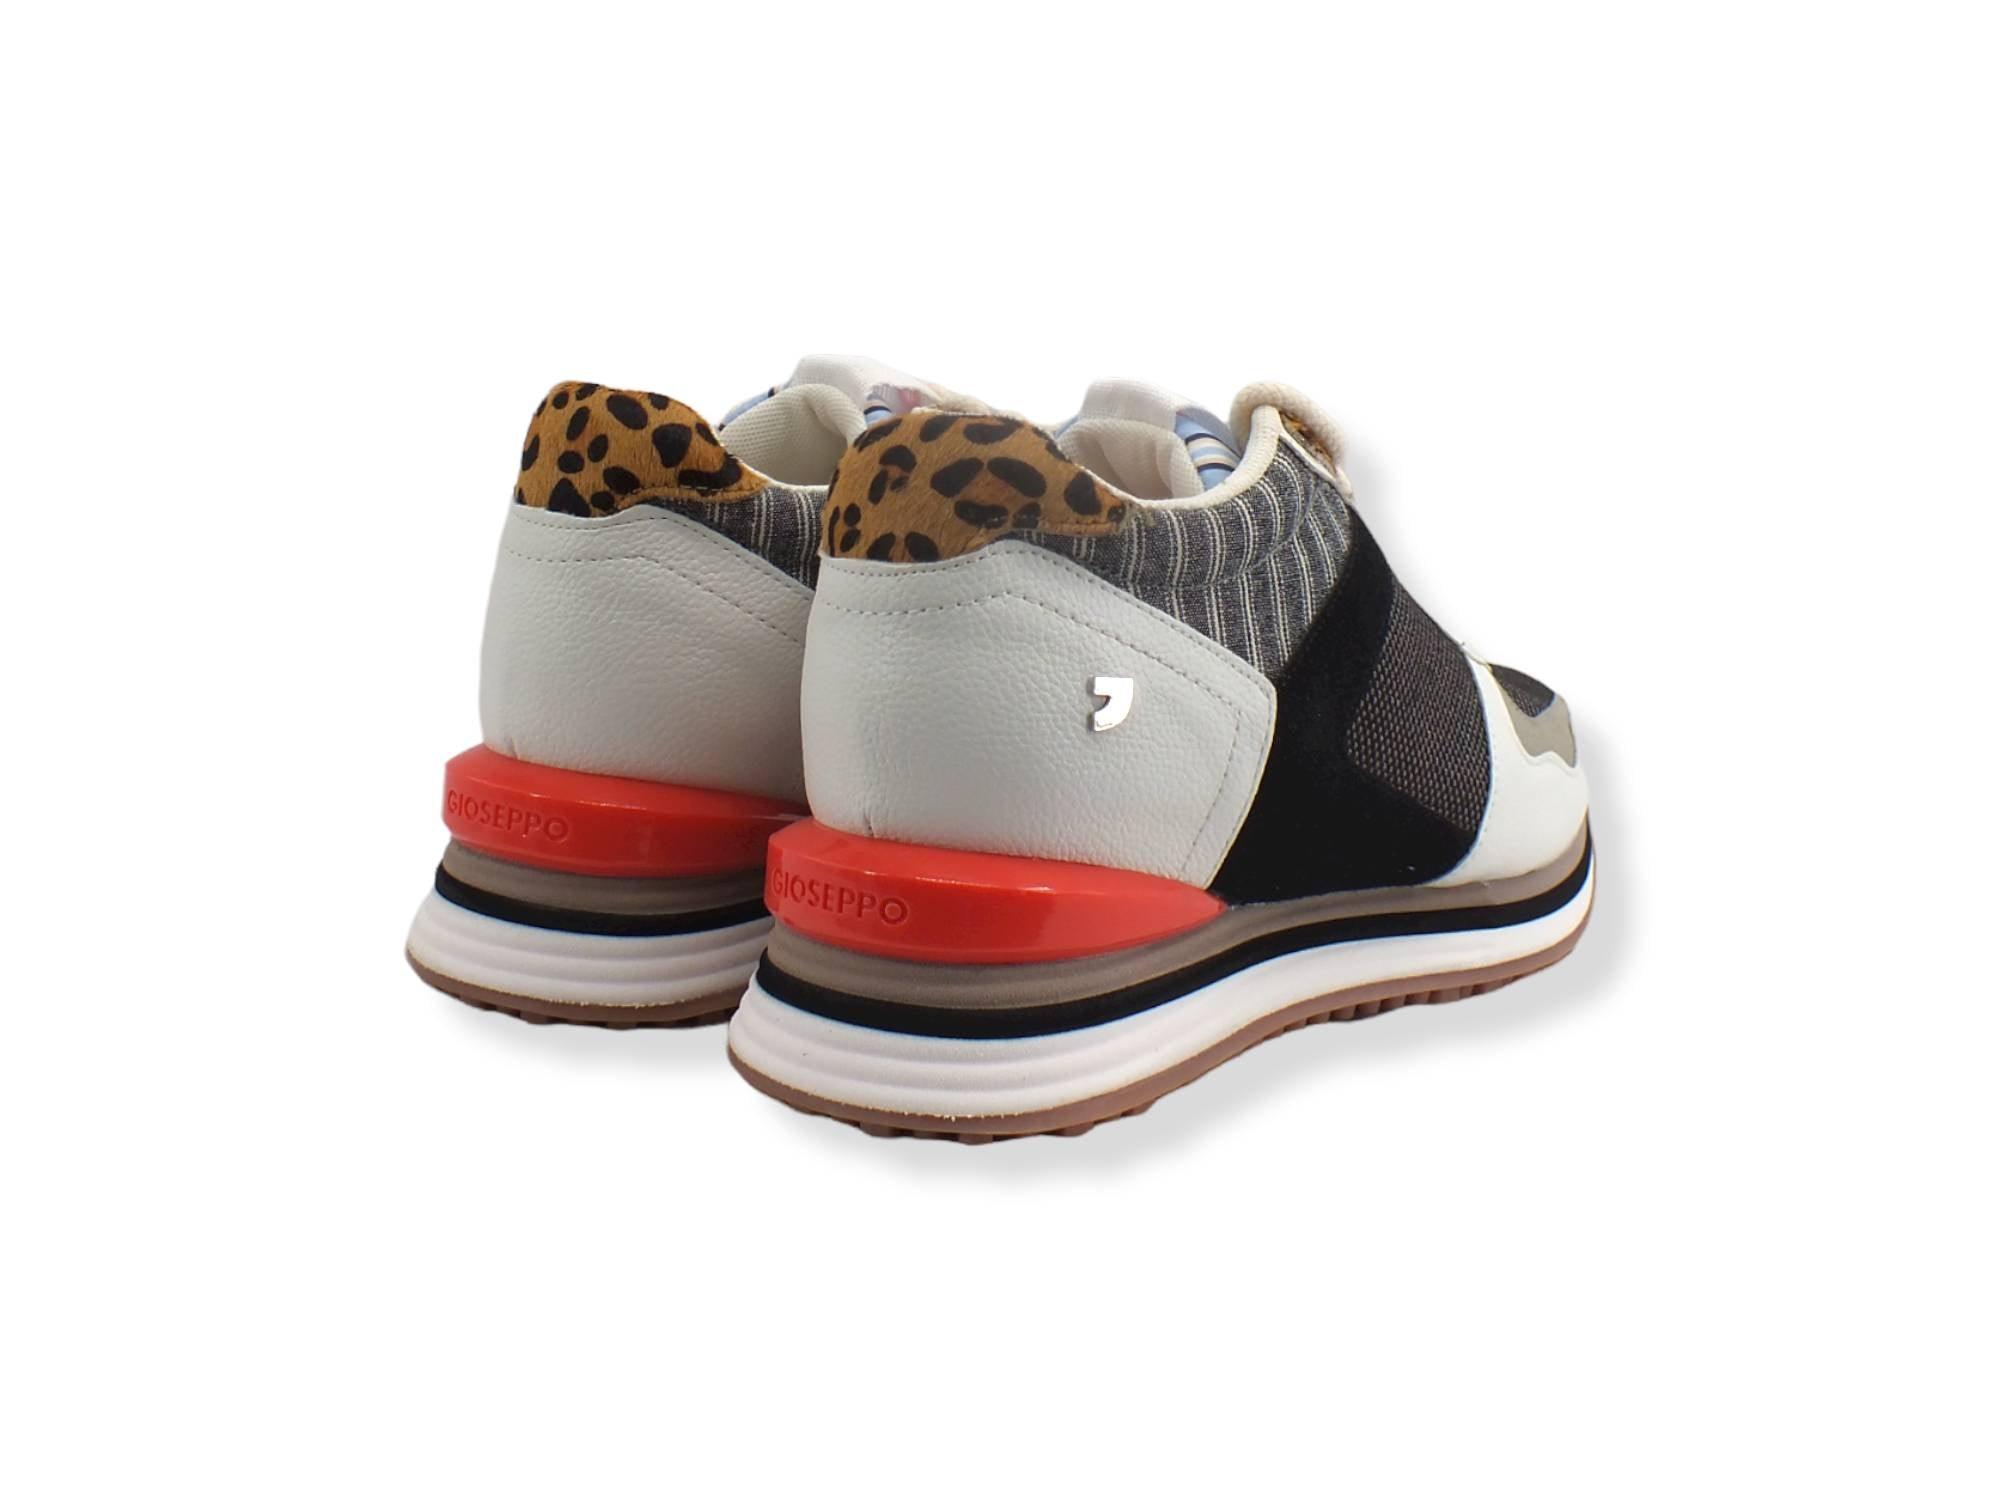 GIOSEPPO Mentana Running Sneaker Donna Intrecci Multi White 65398 - Sandrini Calzature e Abbigliamento